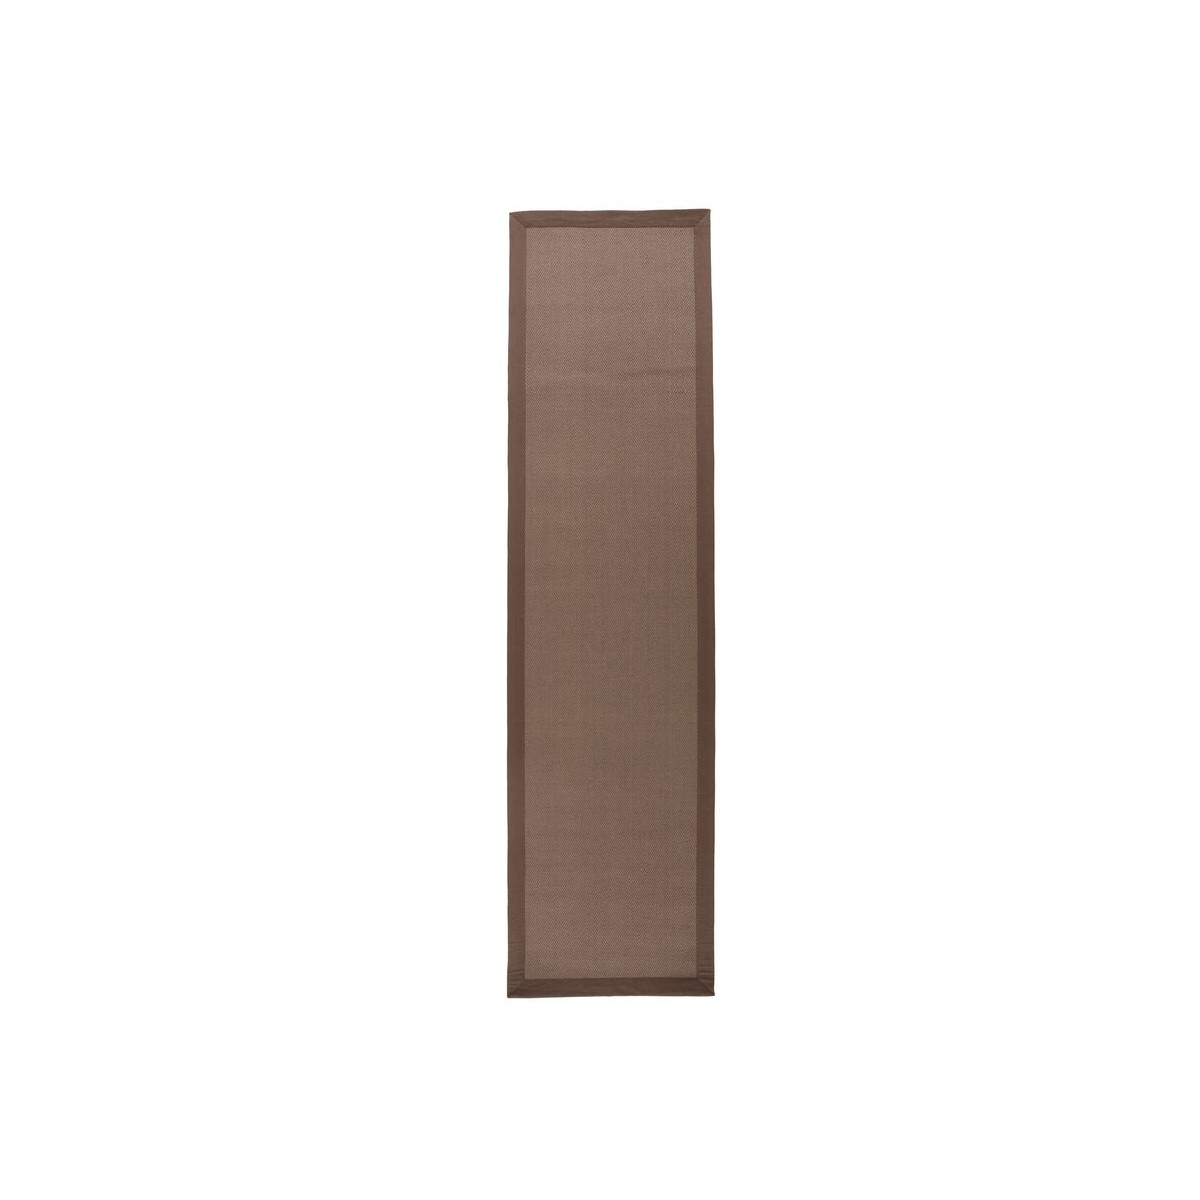 Kusový koberec Natural Fibre Herringbone Grey/Natural